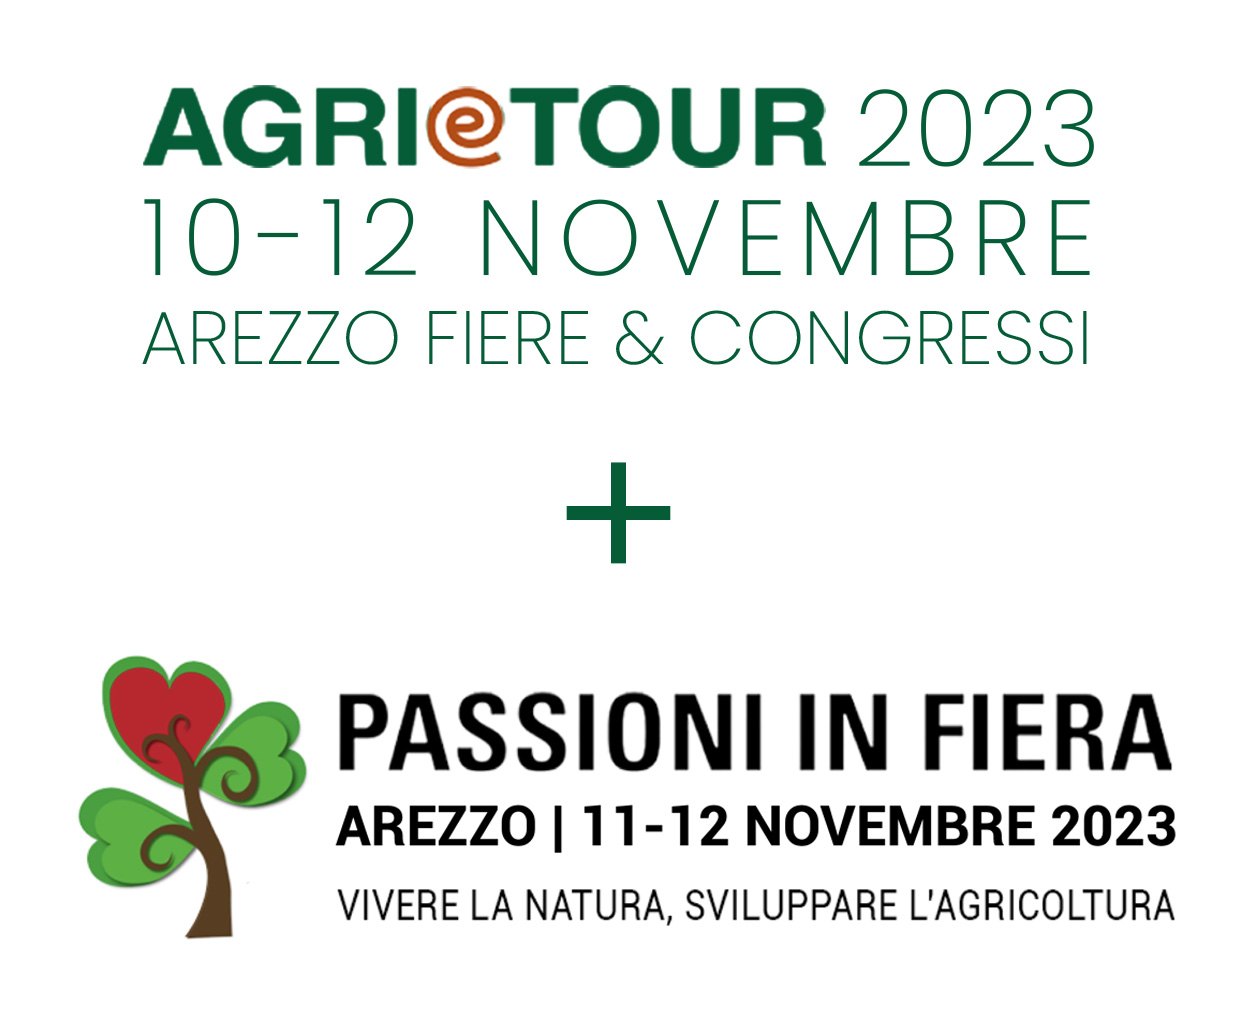 Agri e Tour 2023, presentazione in Sala Esposizioni il 6 novembre alle ore 12